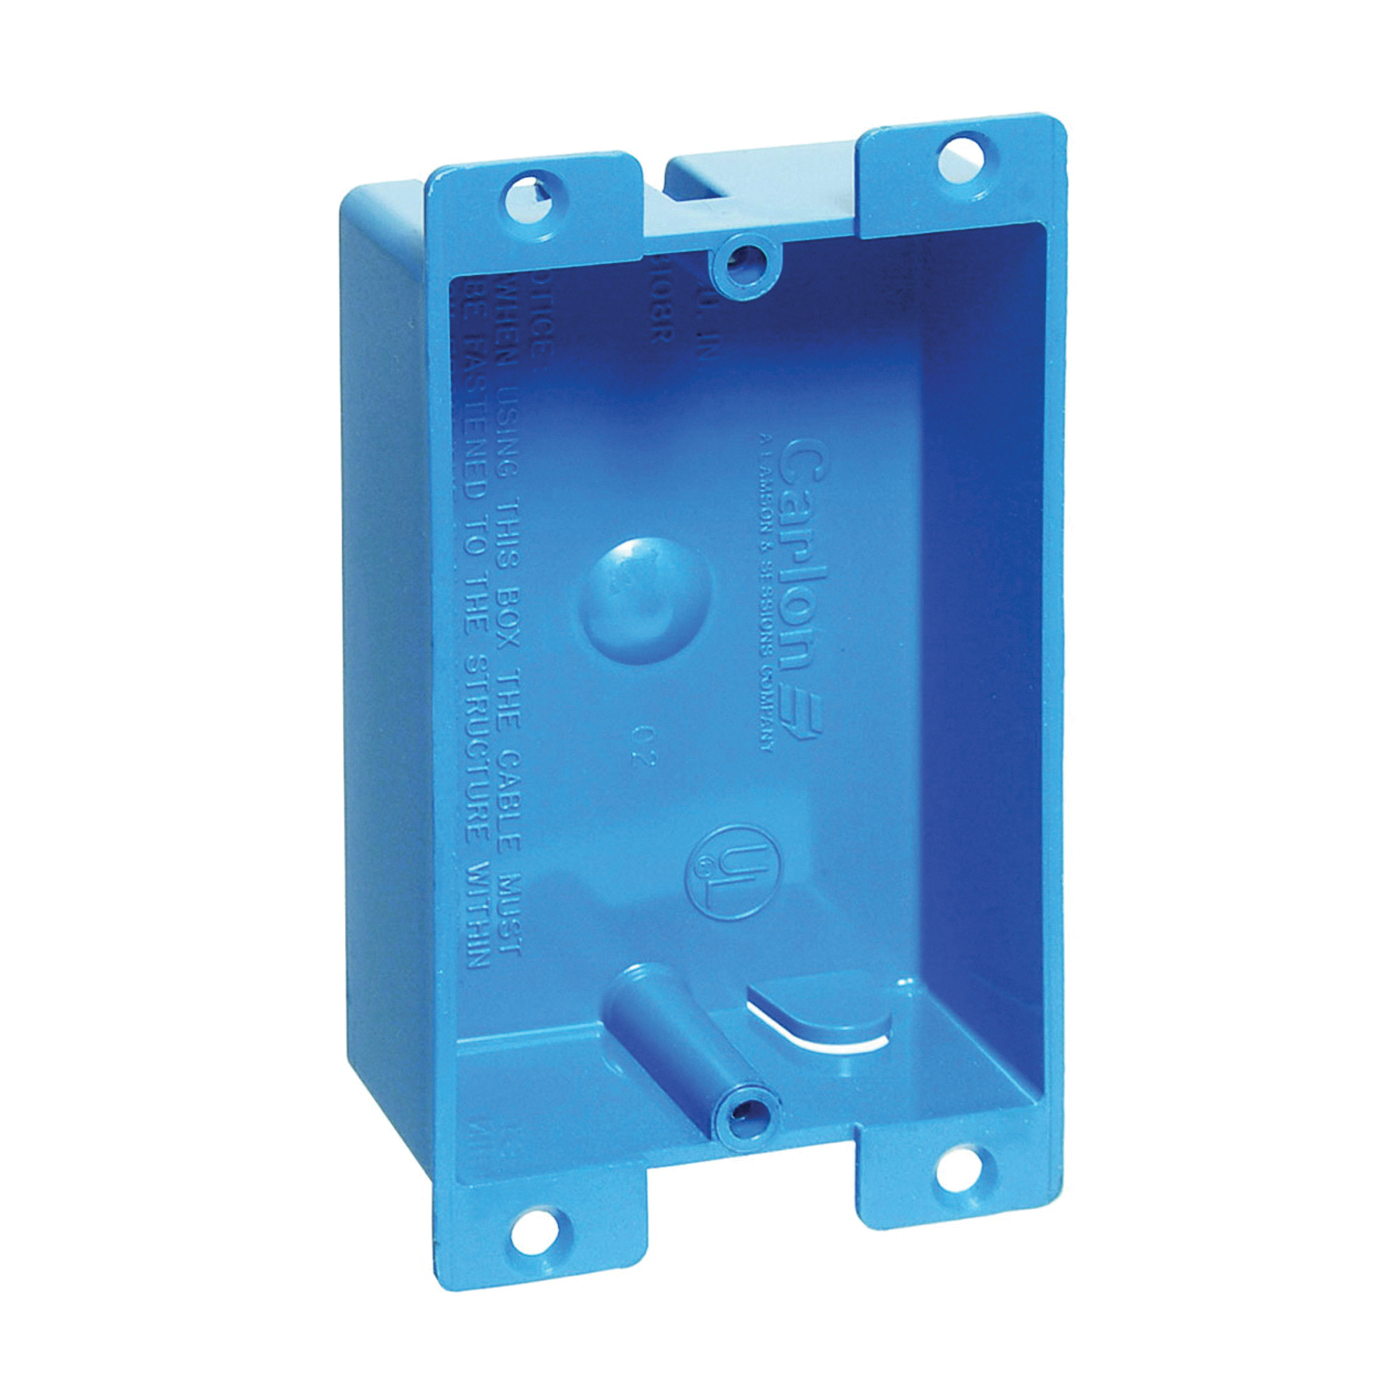 B108R-UPC Outlet Box, 1 -Gang, PVC, Blue